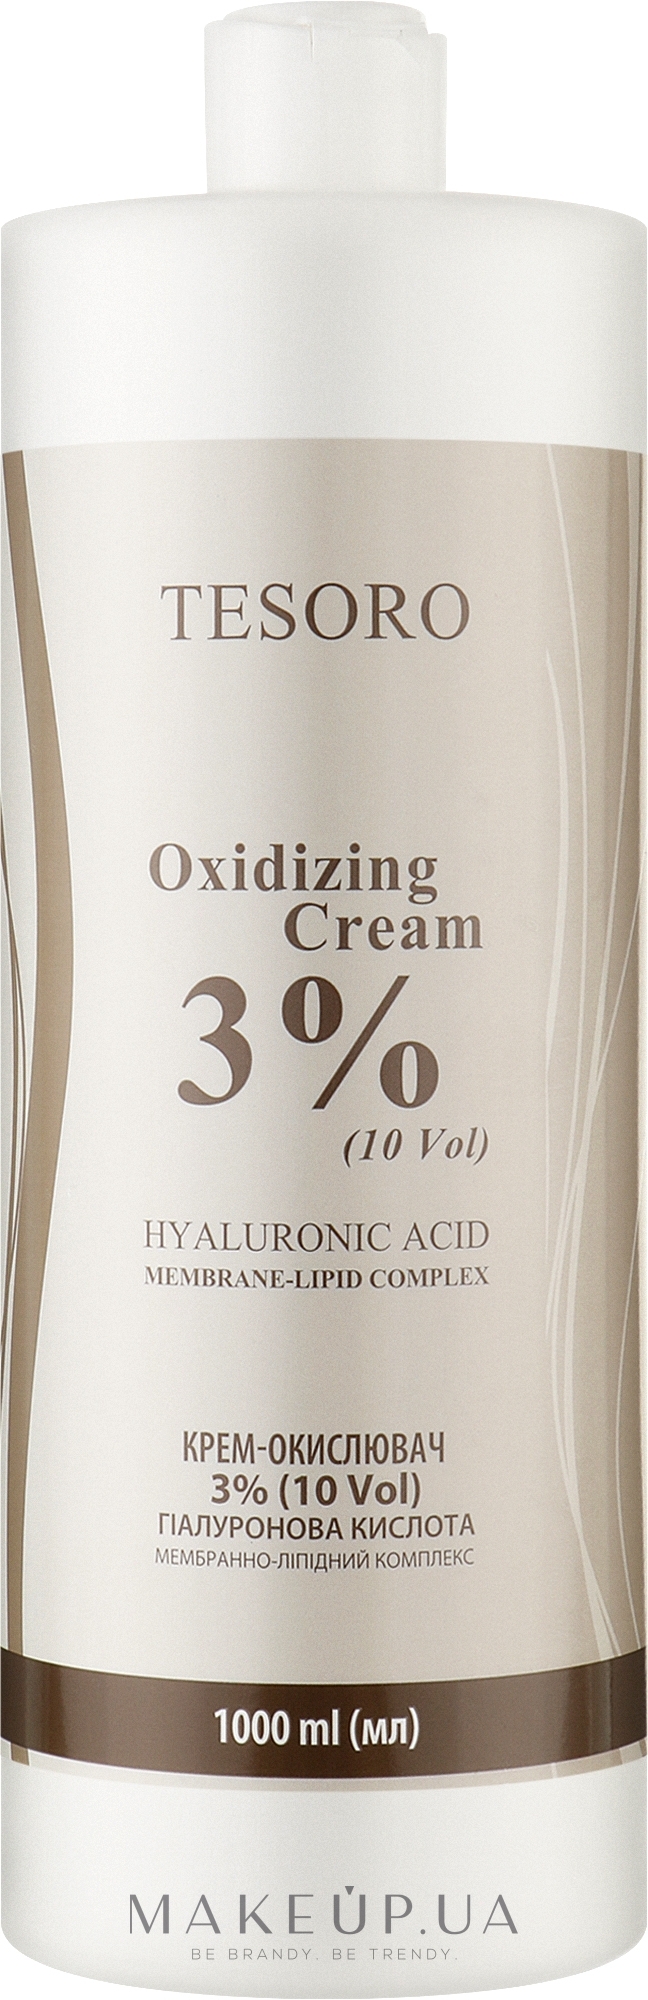 Крем-окислювач 3% - Moli Cosmetics Tesoro Oxidizing Cream 10 Vol — фото 1000ml